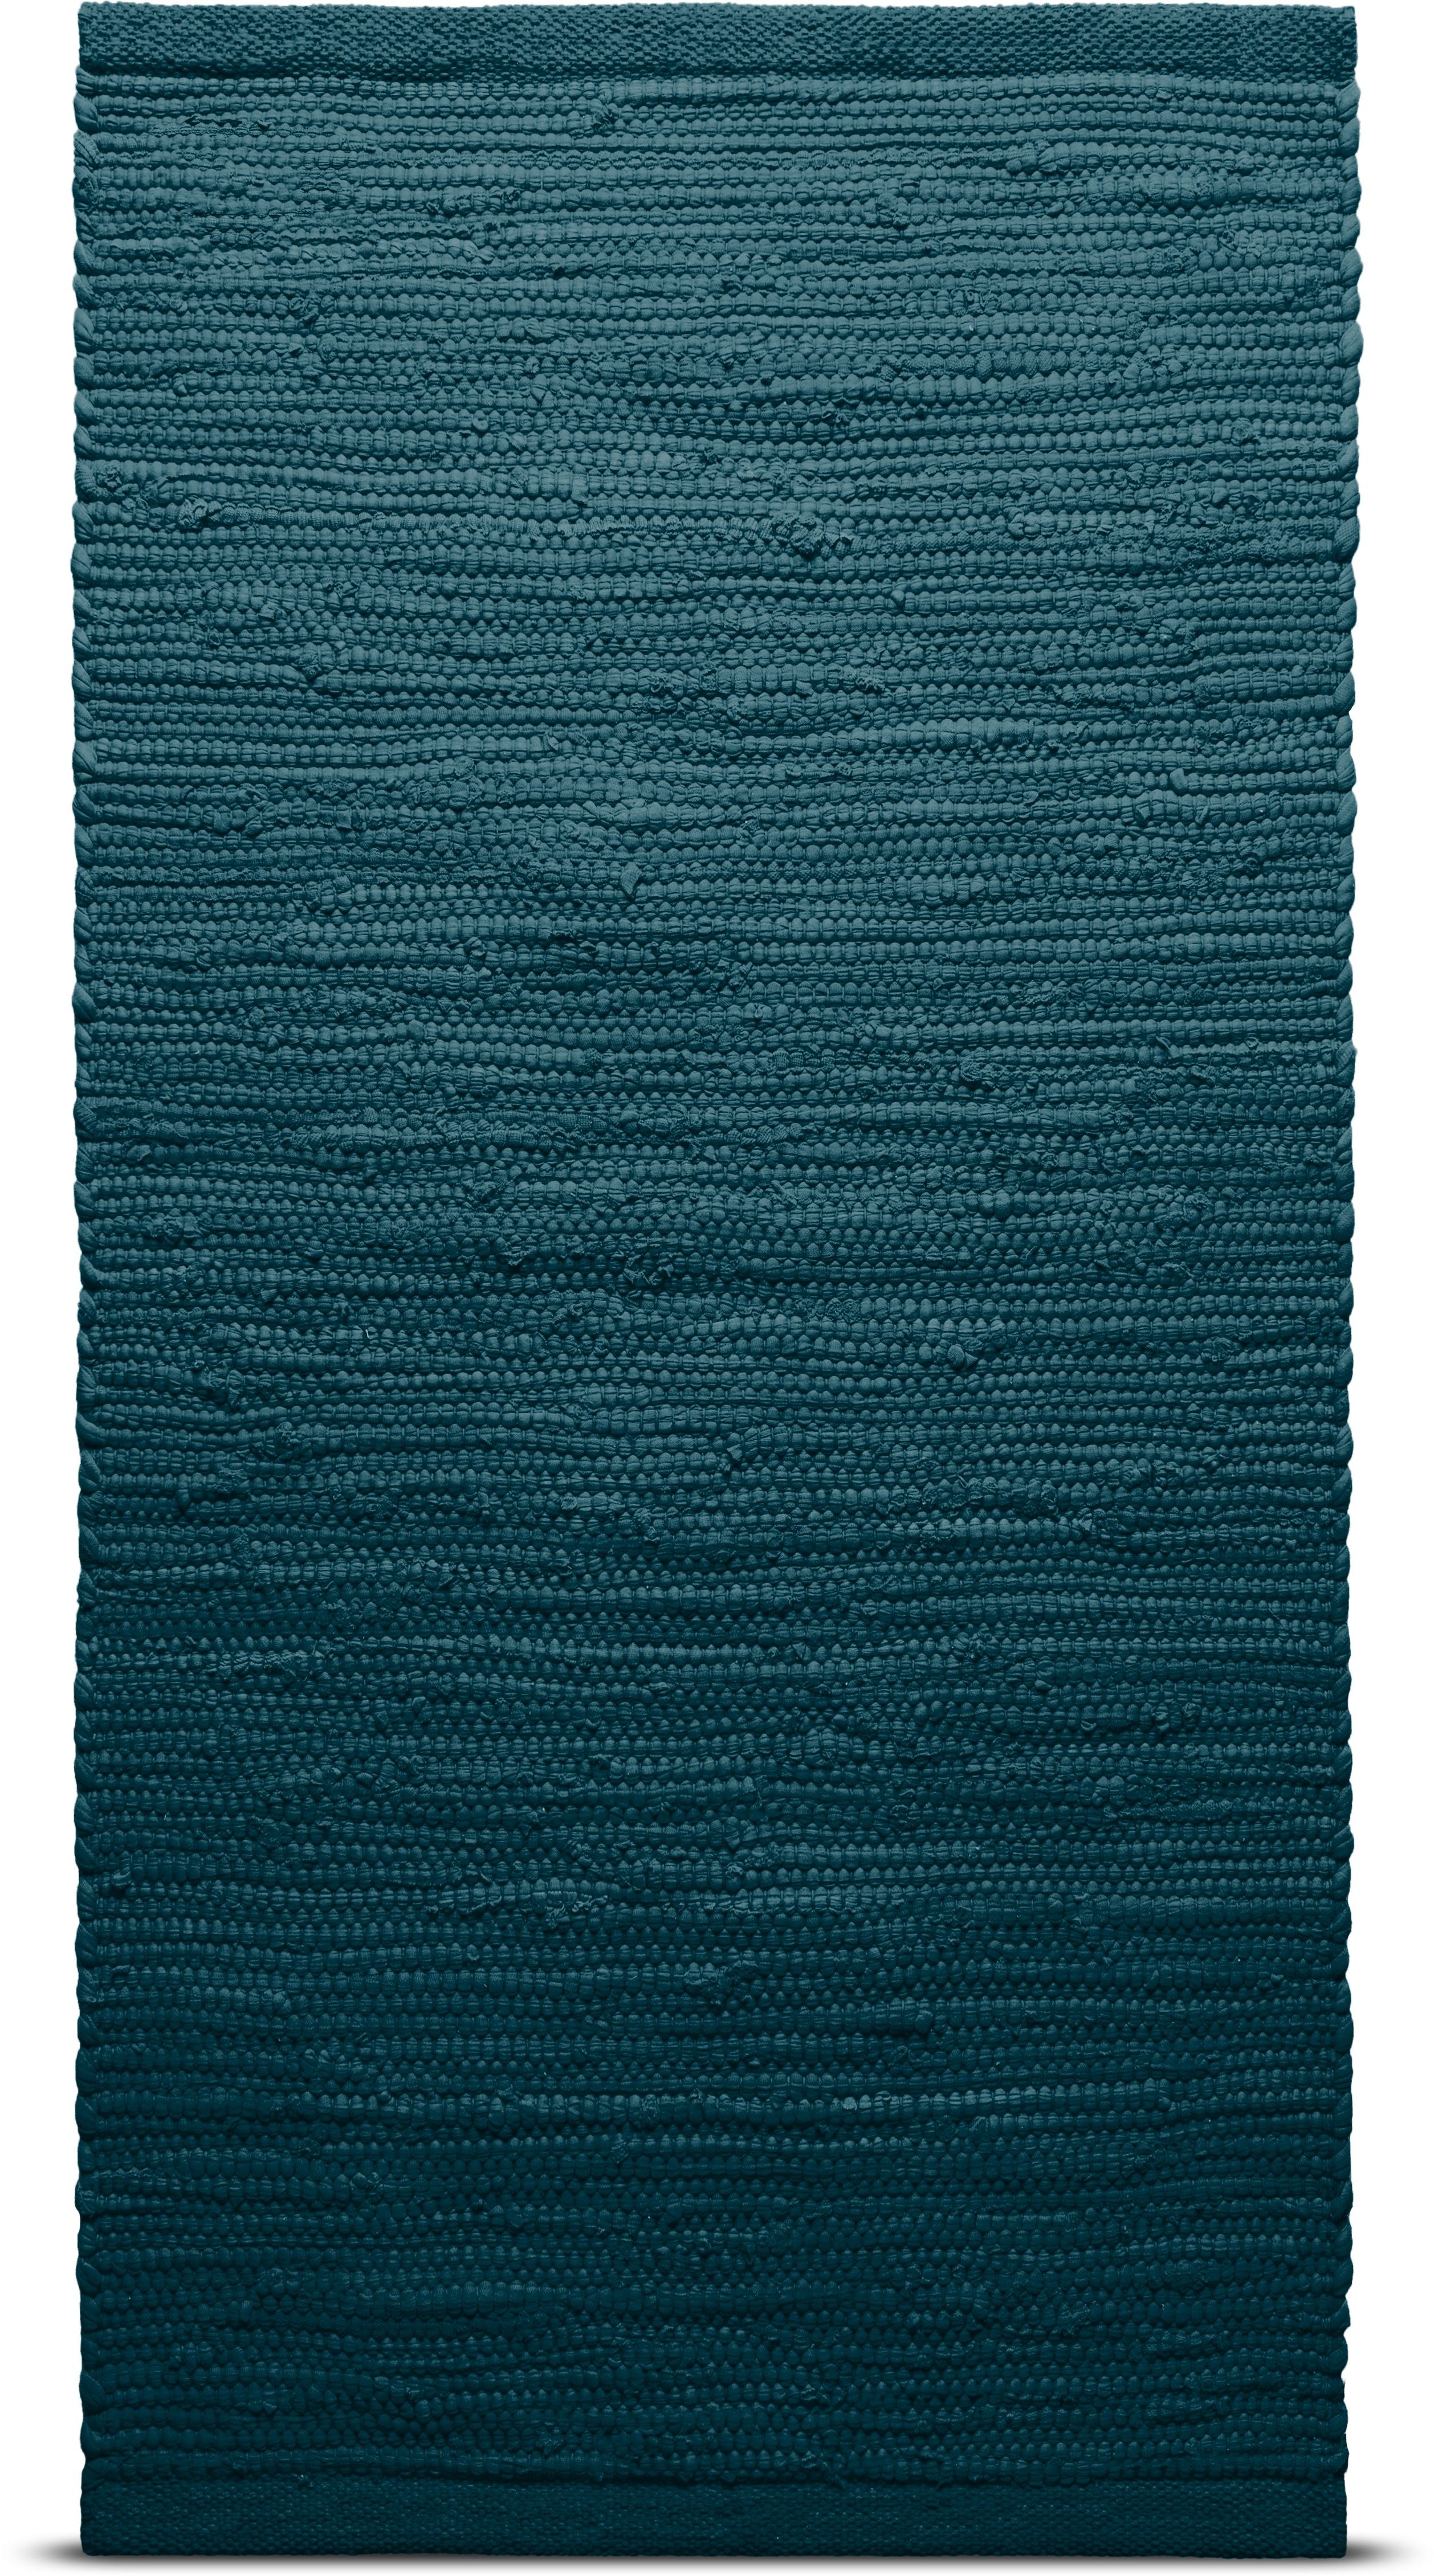 Rug Solid Coton Tapon 75 x 200 cm, kérosène